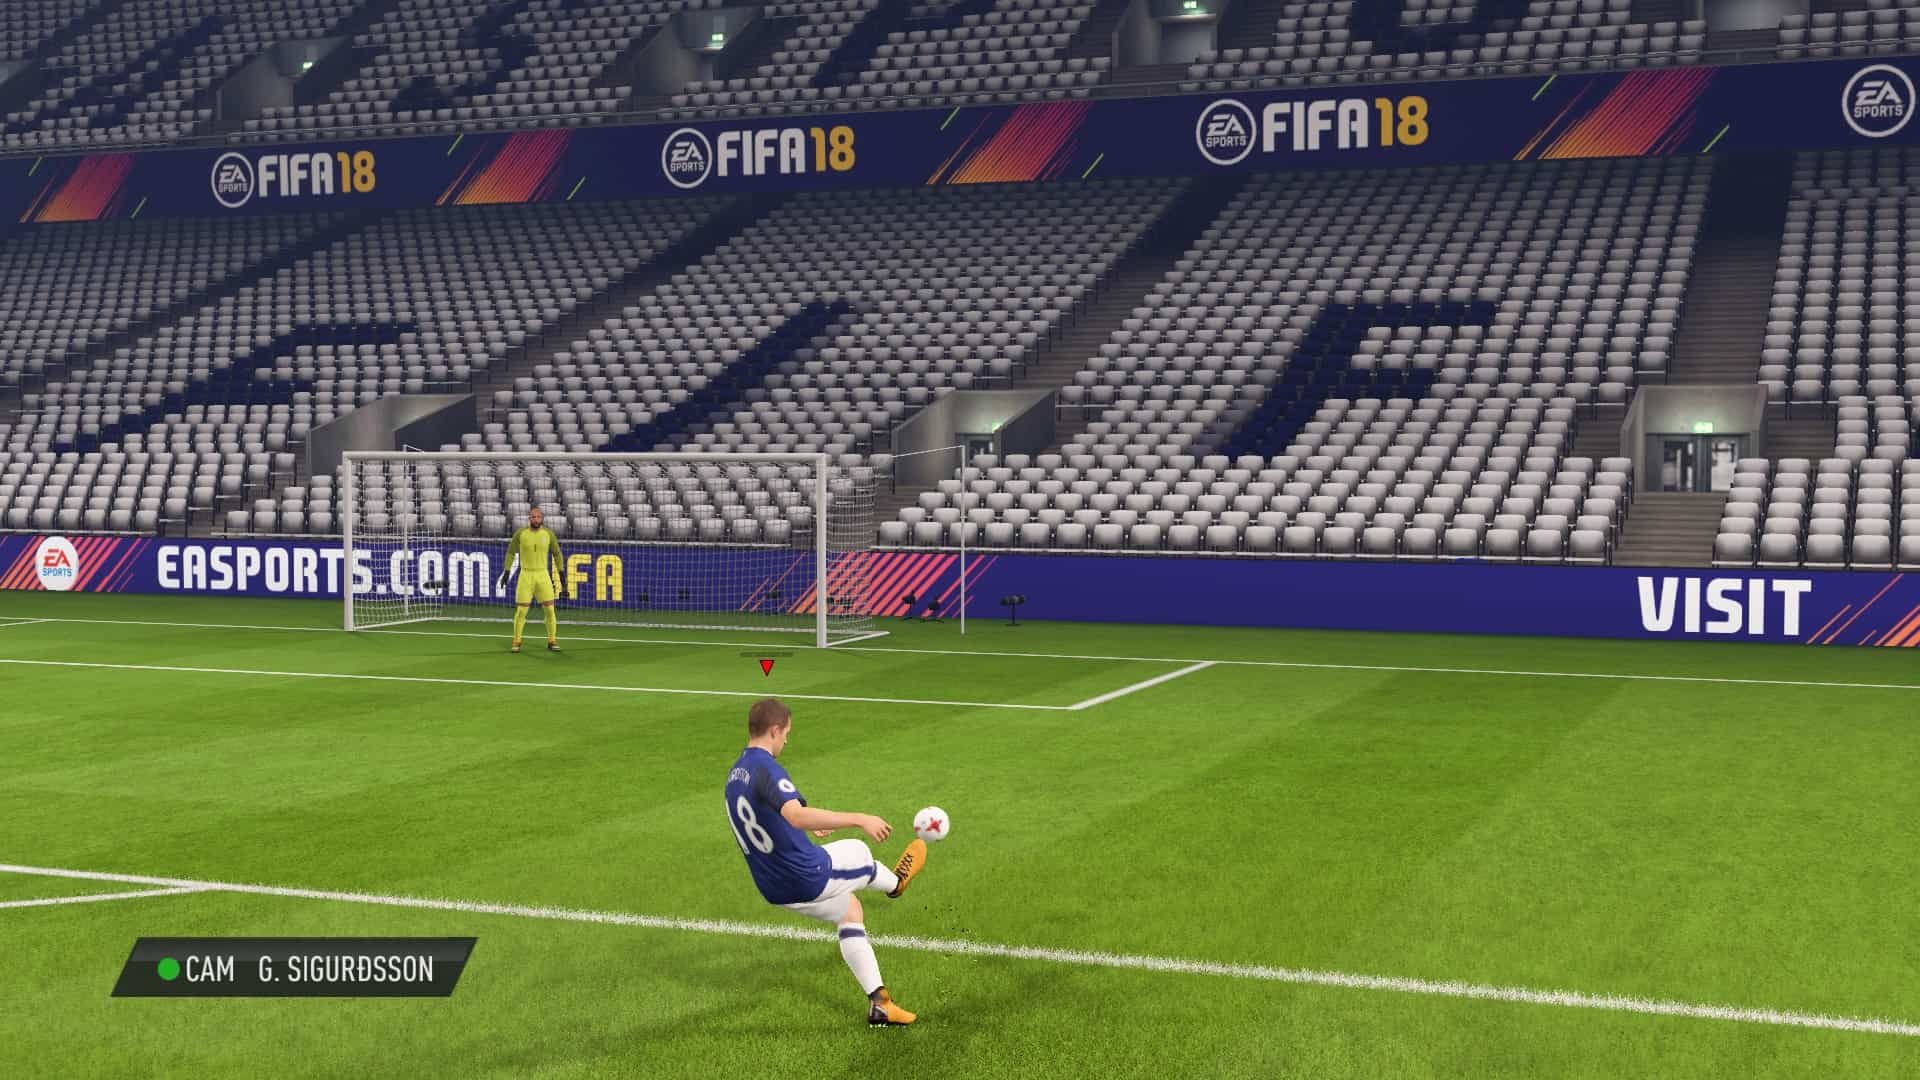 Sigurdsson taking a Free Kick in FIFA 18